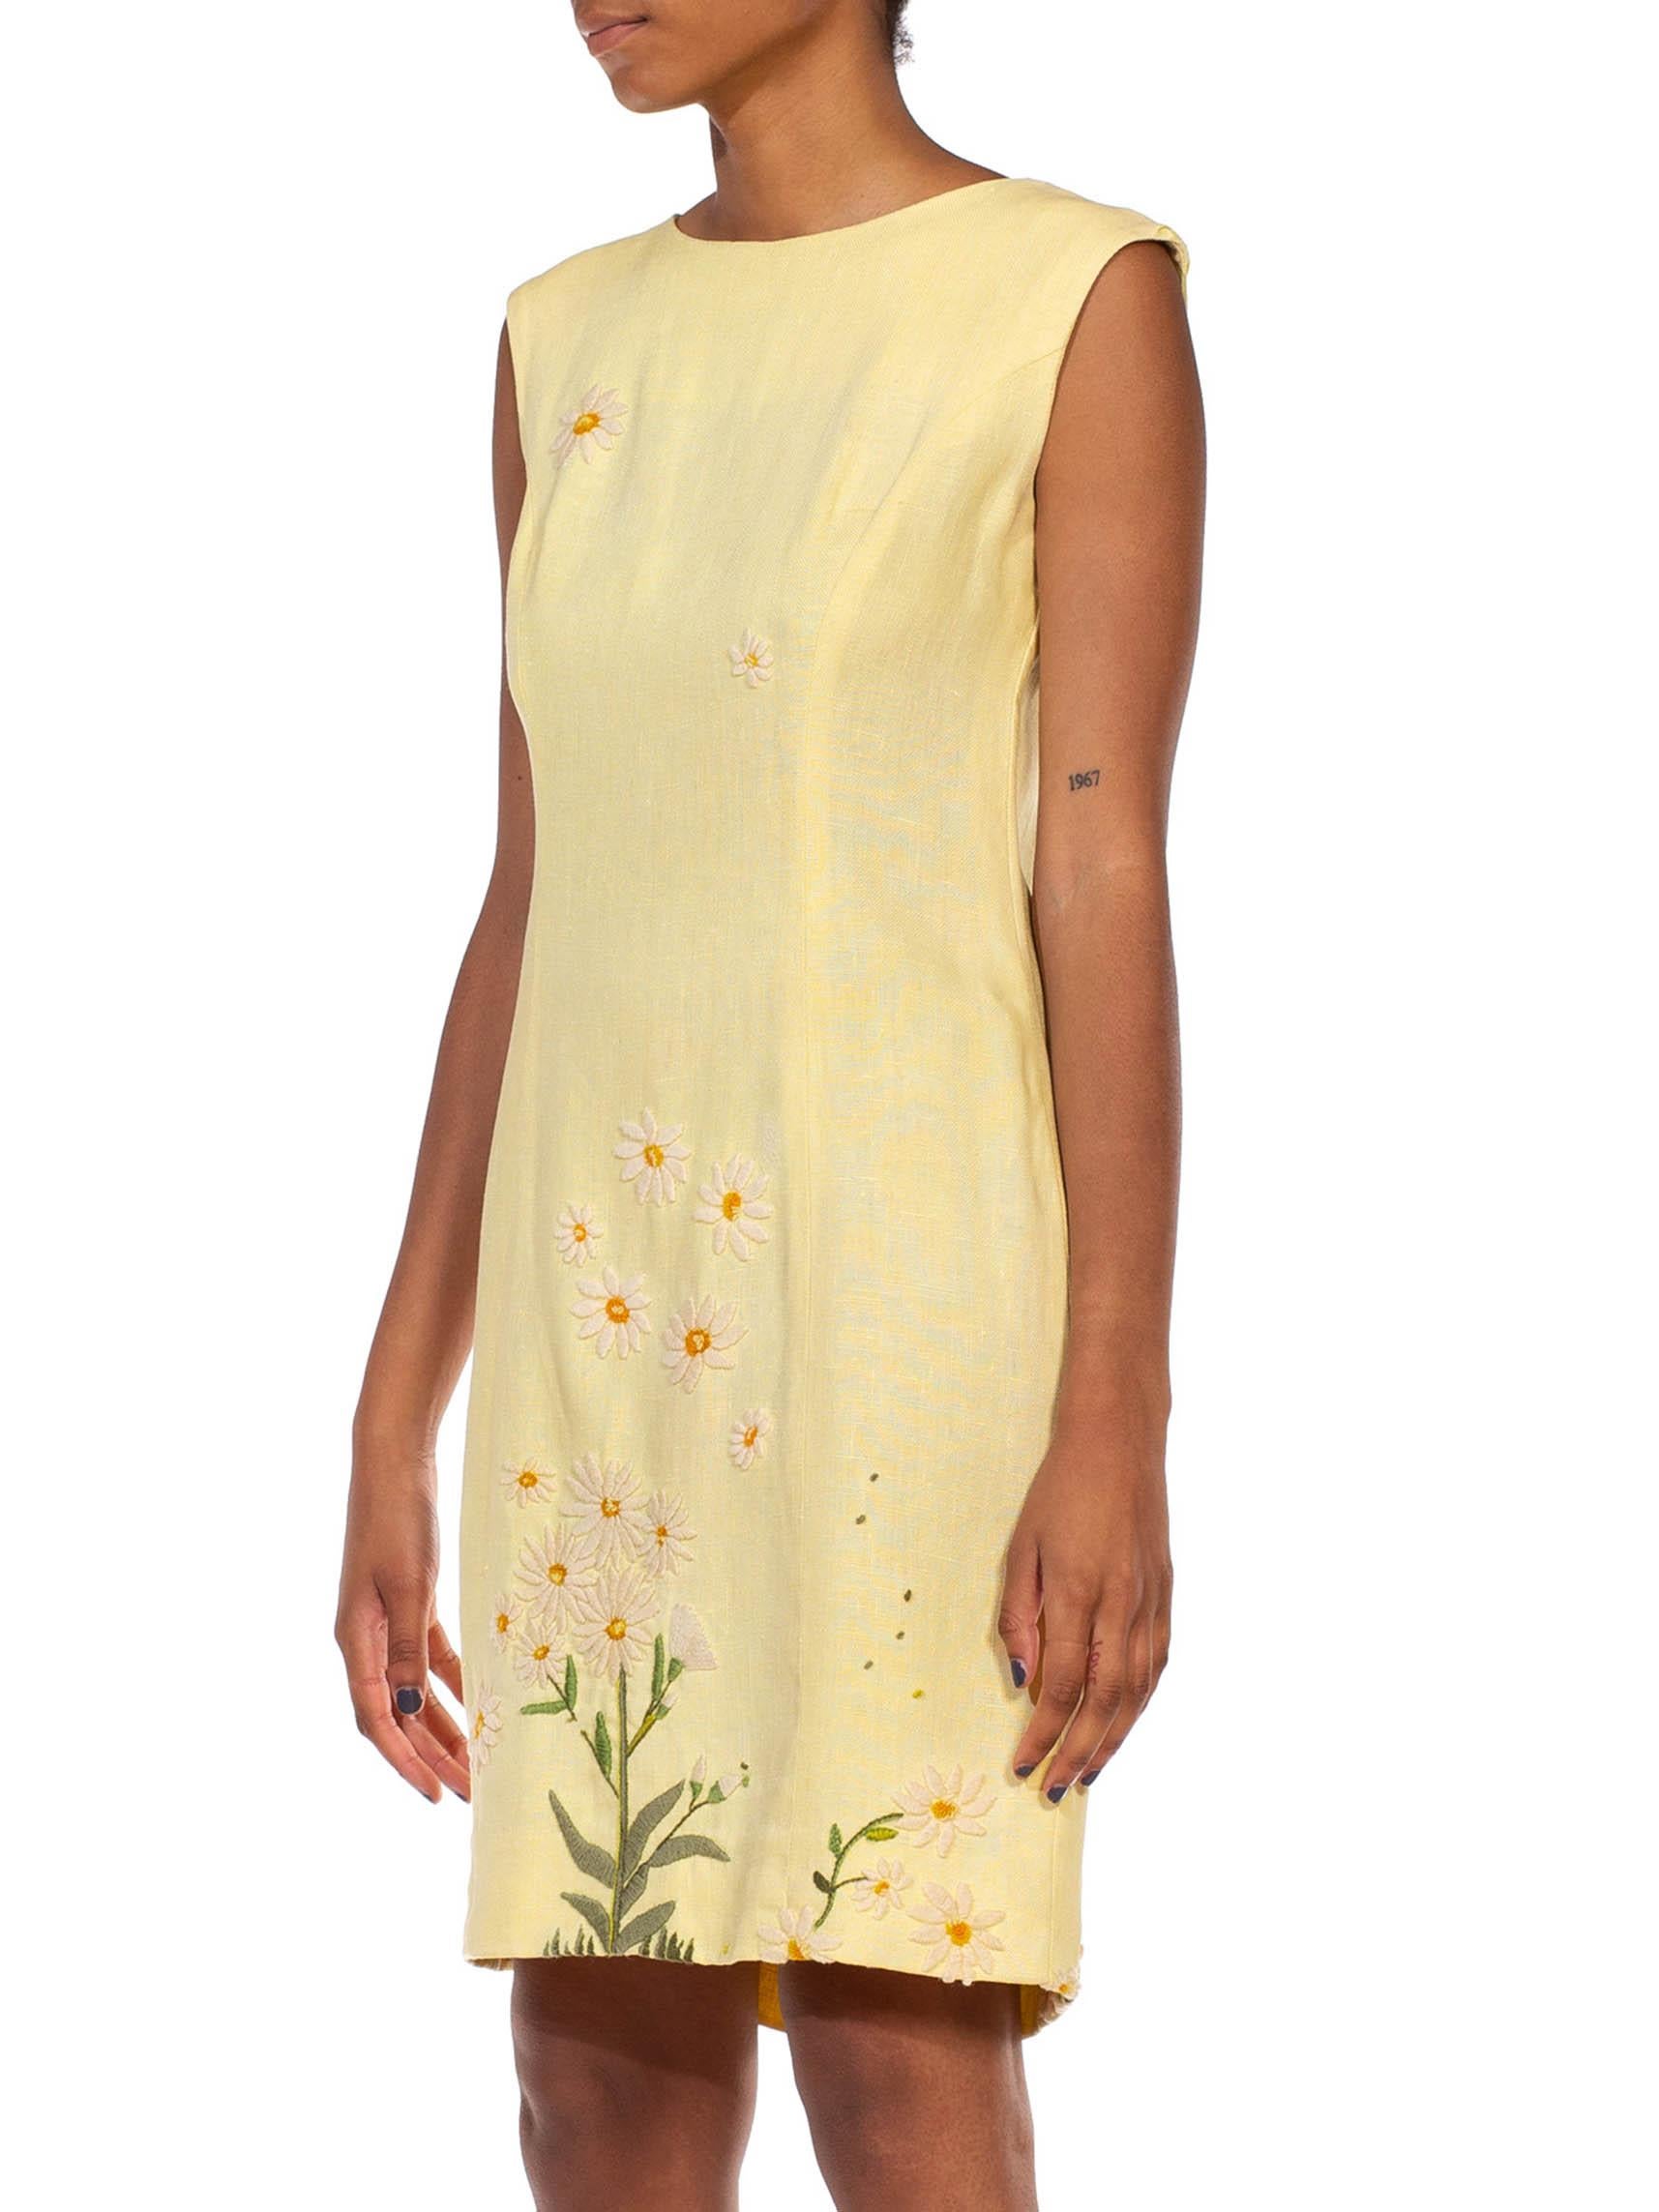 Women's 1960S Butter Yellow Linen Daisy Embroidered Mod Dress